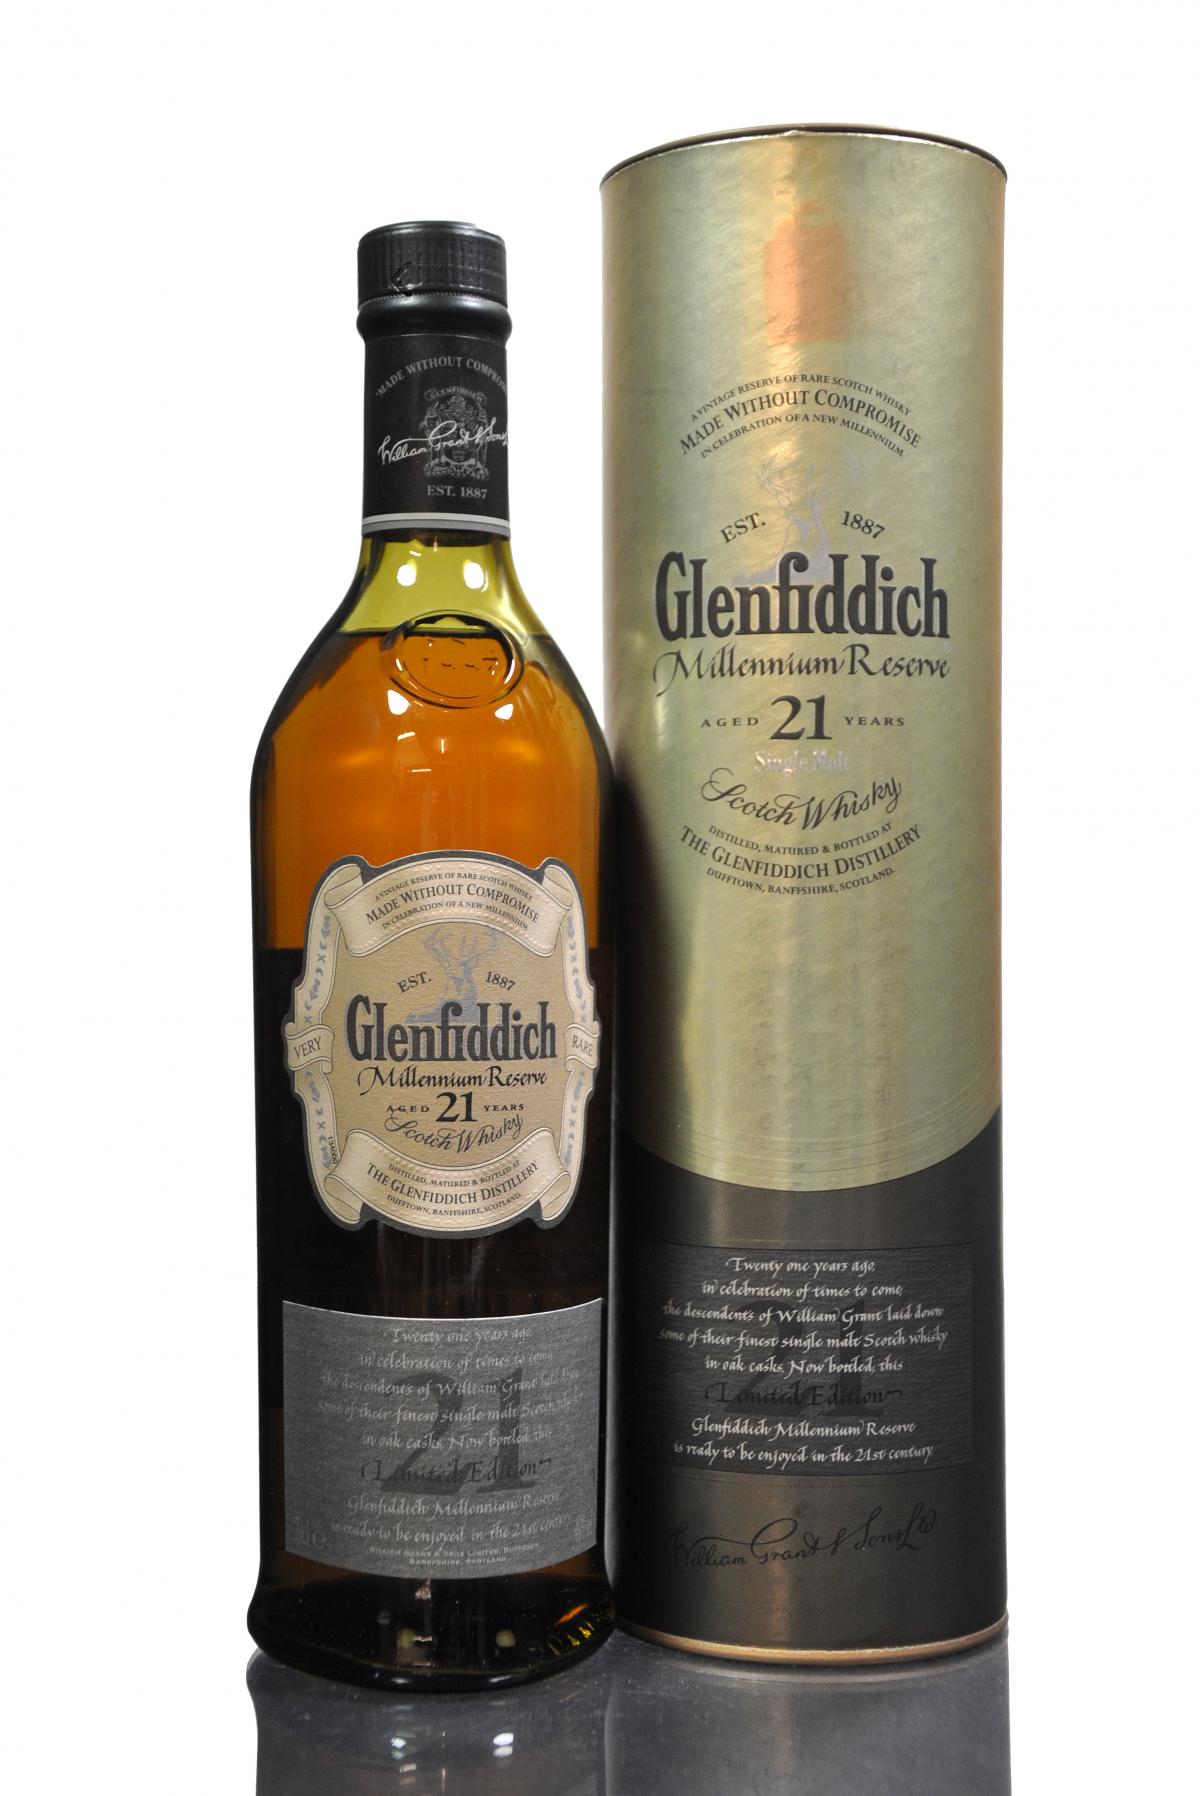 Glenfiddich 21 Year Old - Millennium Reserve